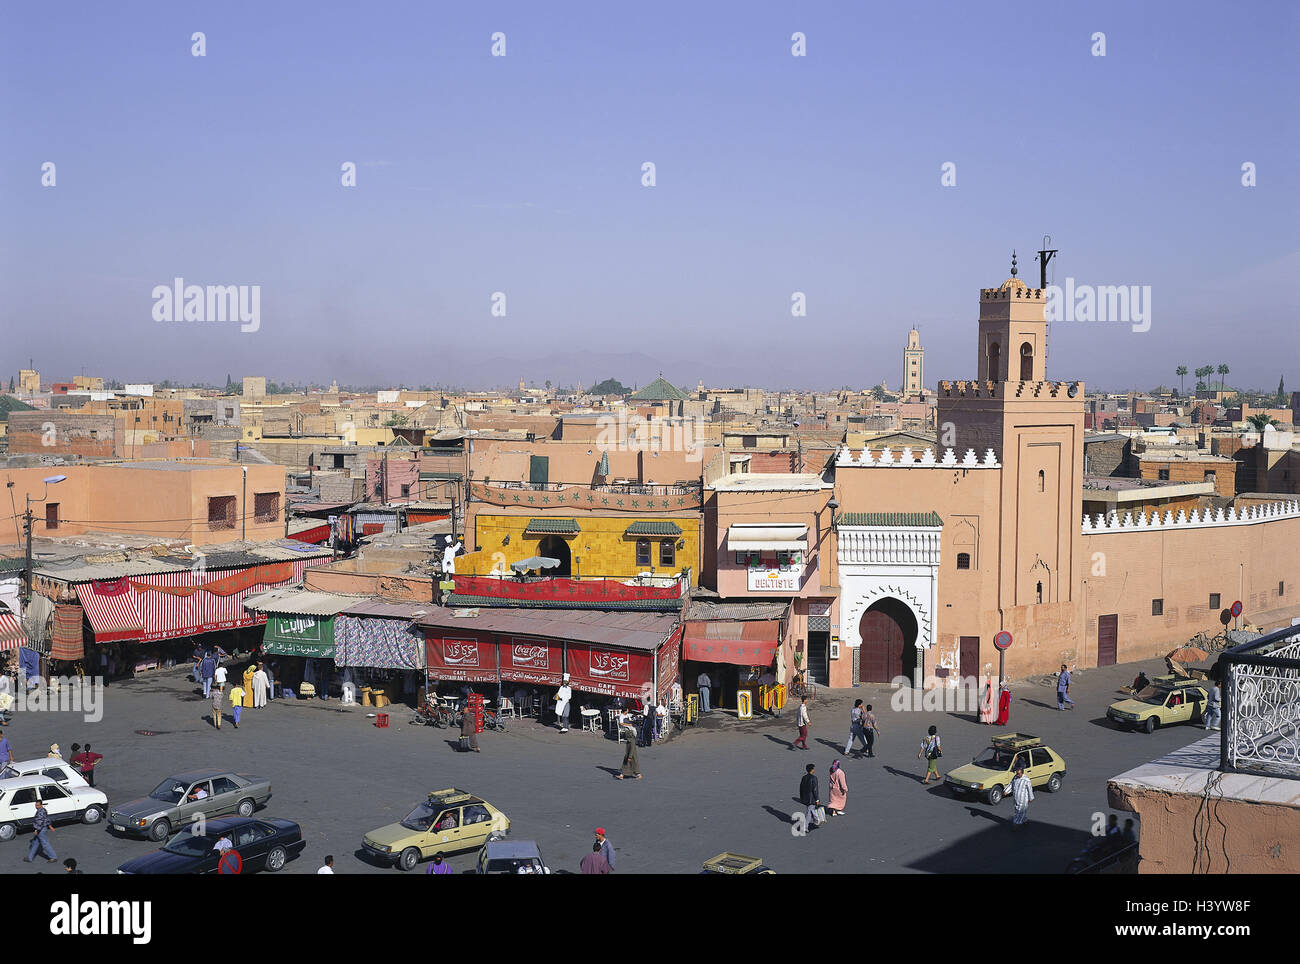 Le Maroc, Marrakech, Place Djemaa el-Fna, des capitaux, de la ville, Vieille Ville, Medina, centre, de l'espace Banque D'Images